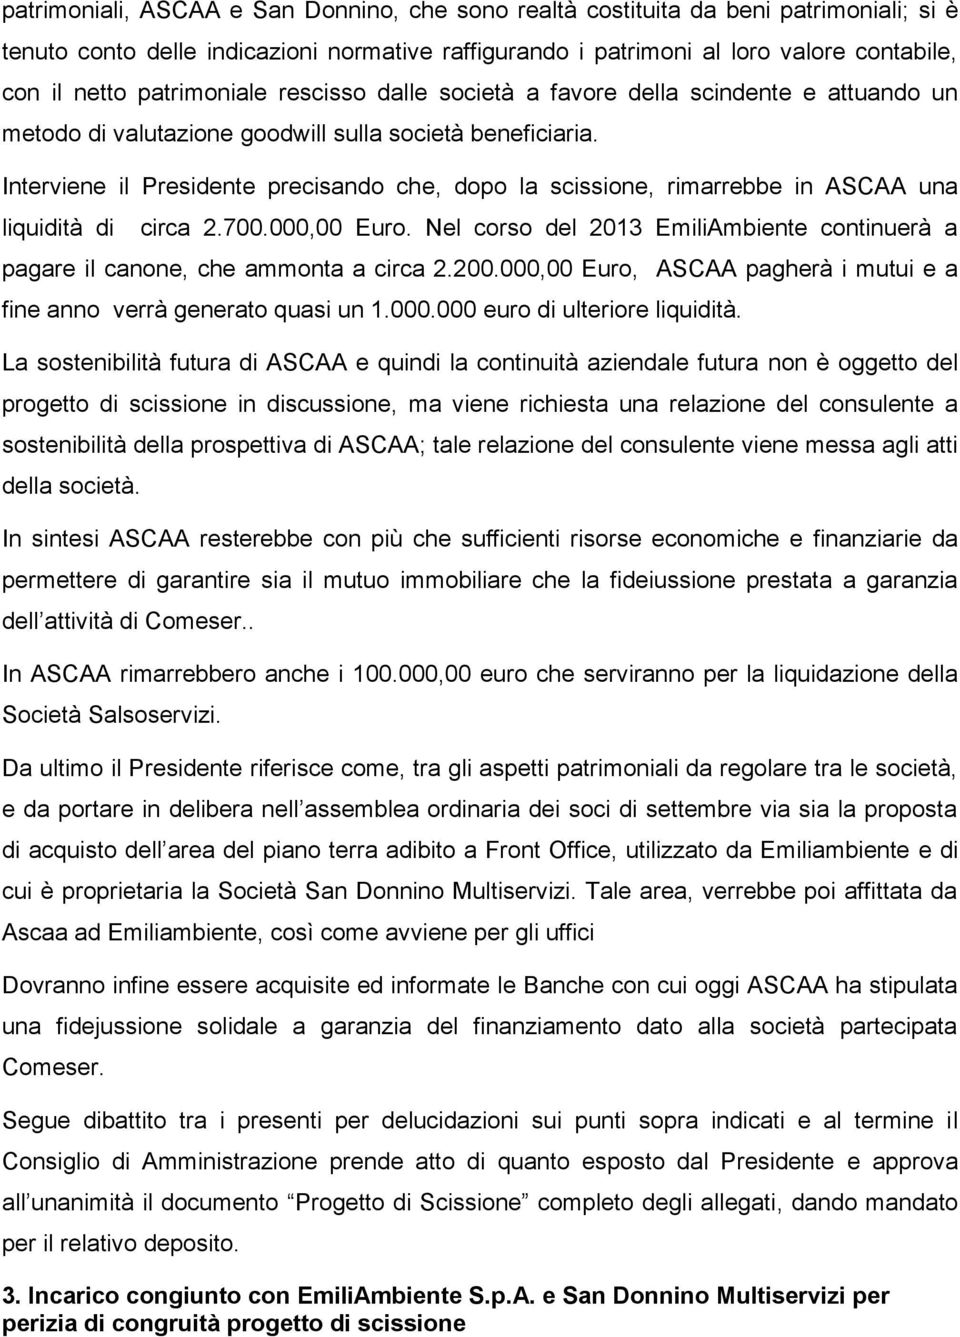 Interviene il Presidente precisando che, dopo la scissione, rimarrebbe in ASCAA una liquidità di circa 2.700.000,00 Euro.